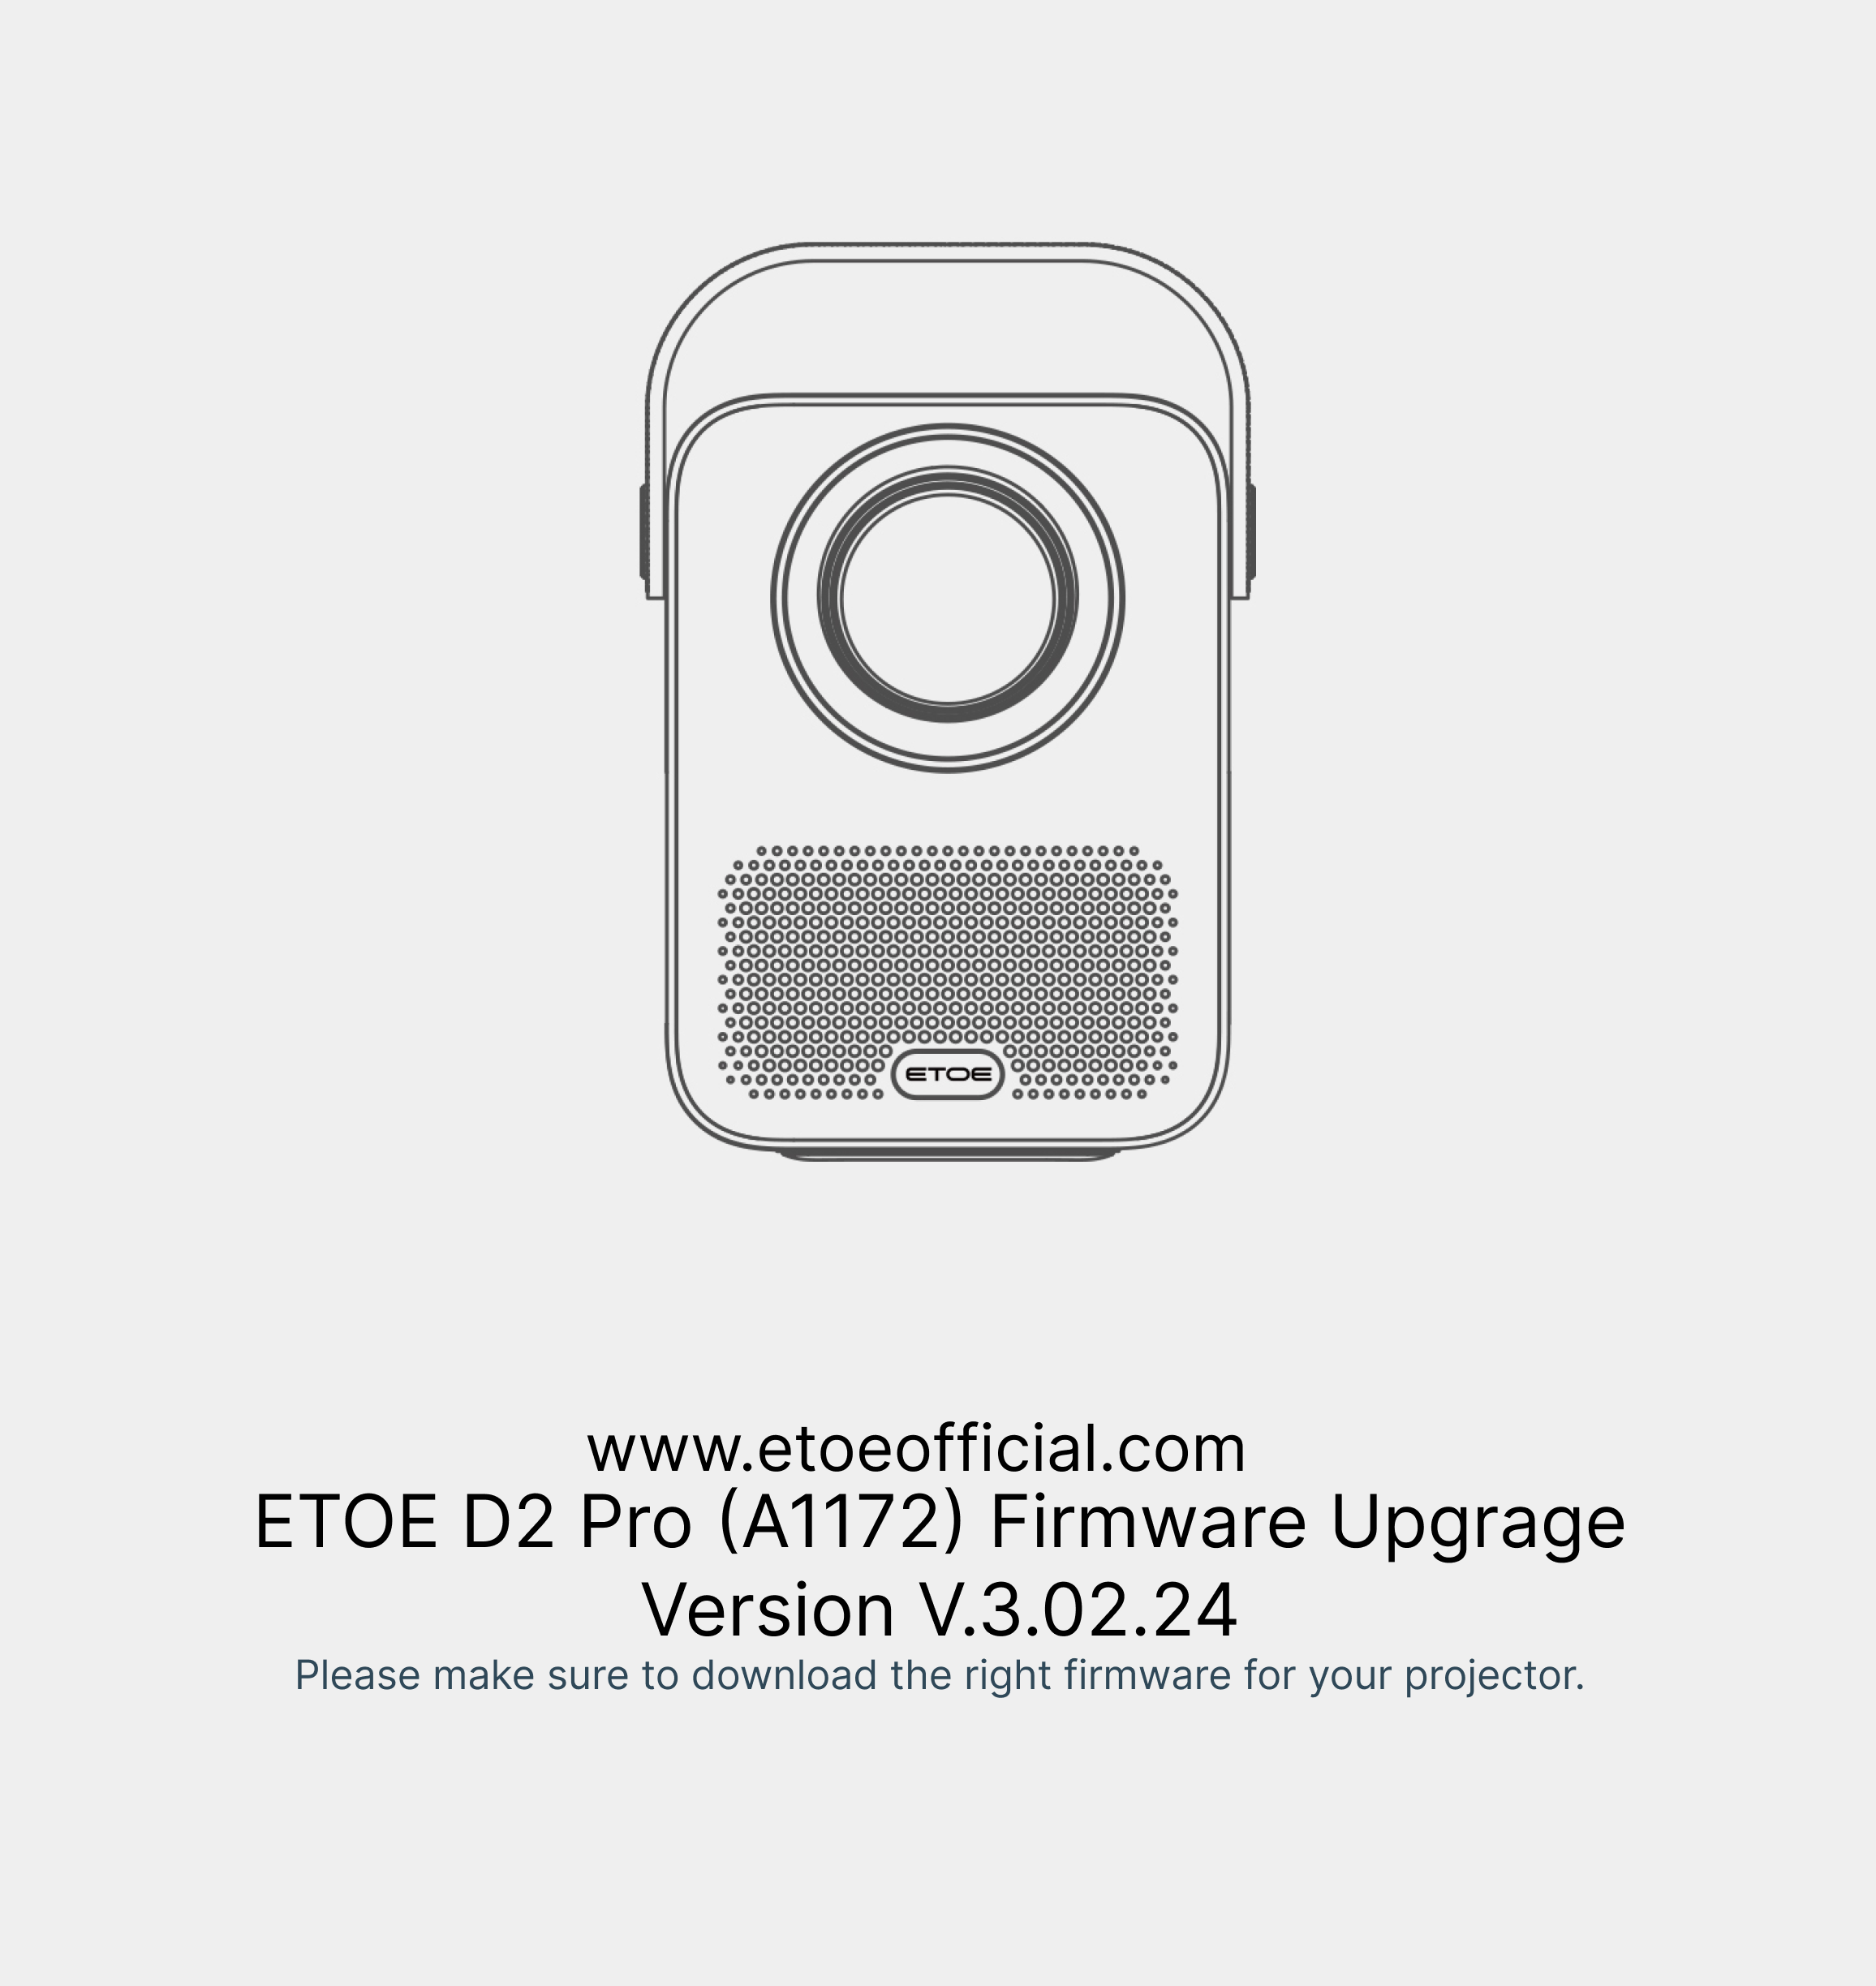 ETOE D2 Proファームウェアのアップグレード